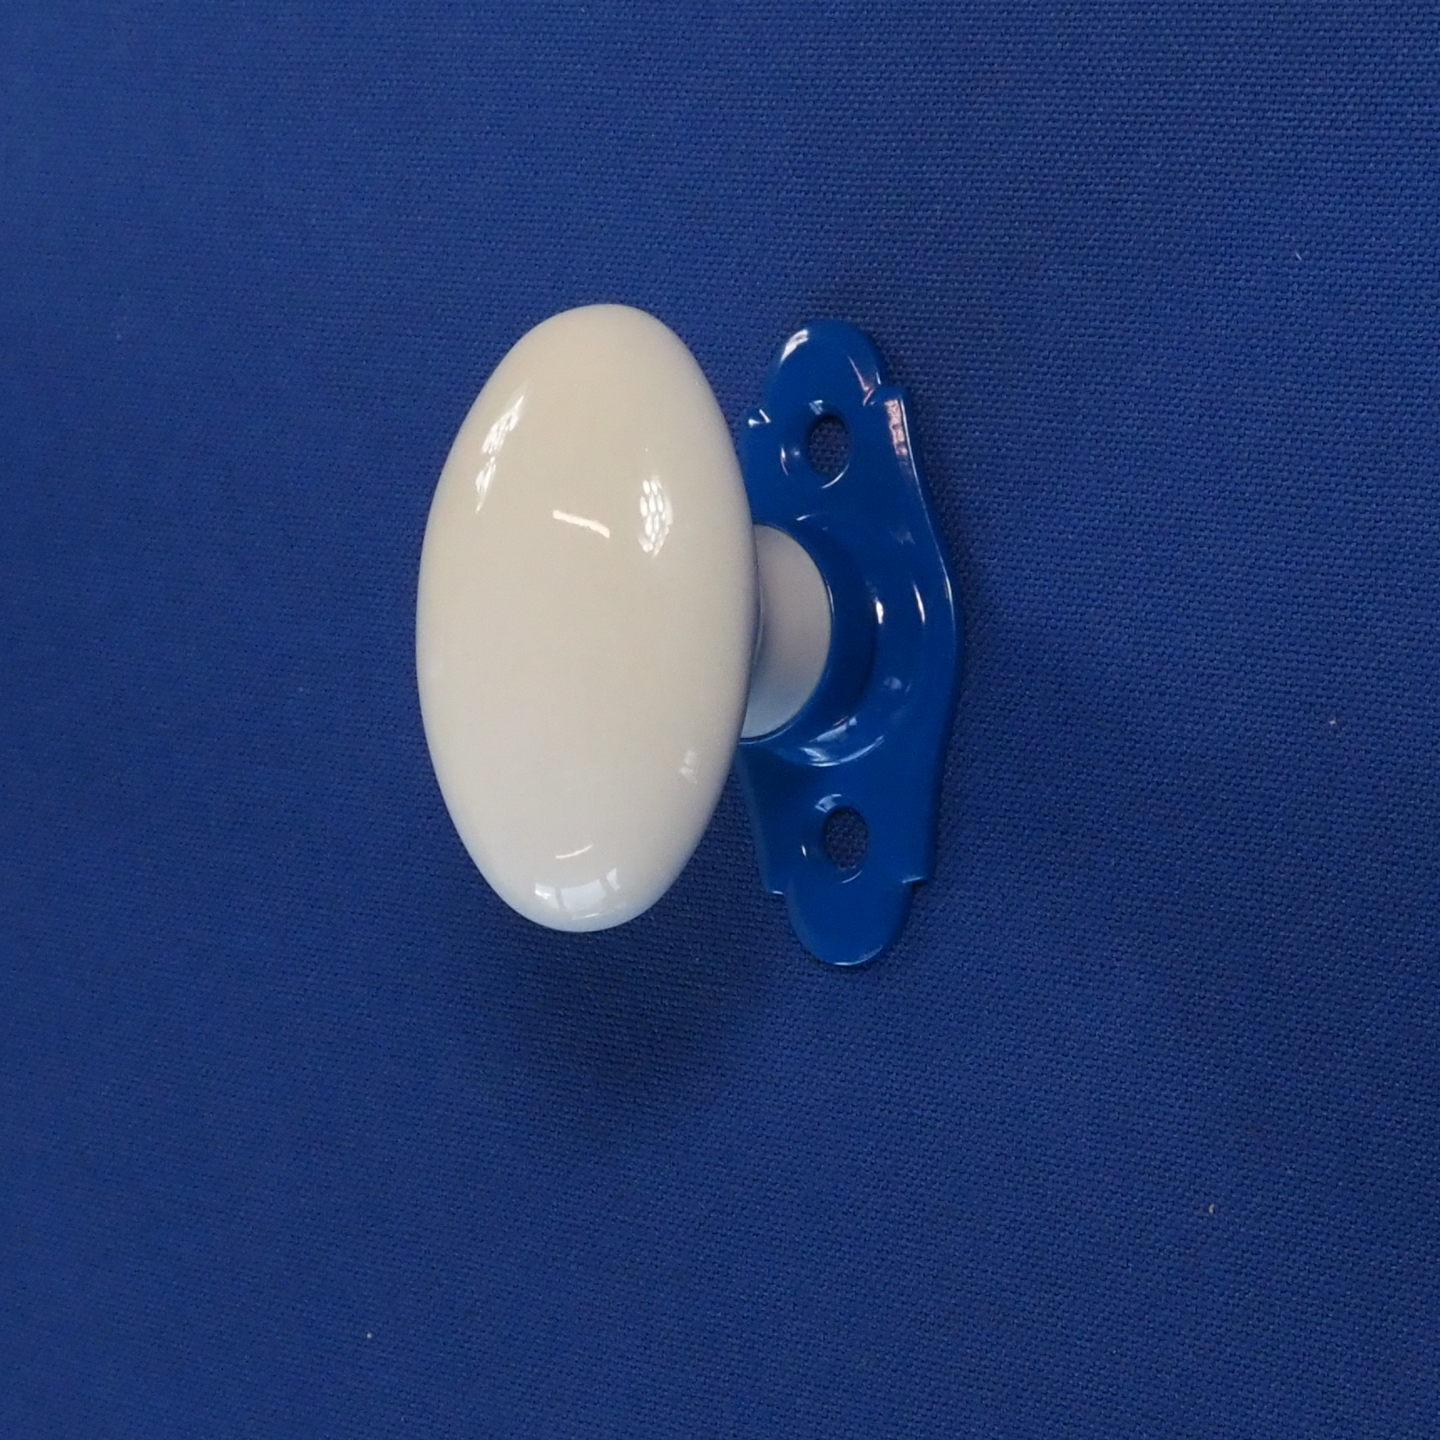 Single door knob in Limoges porcelain - Blue